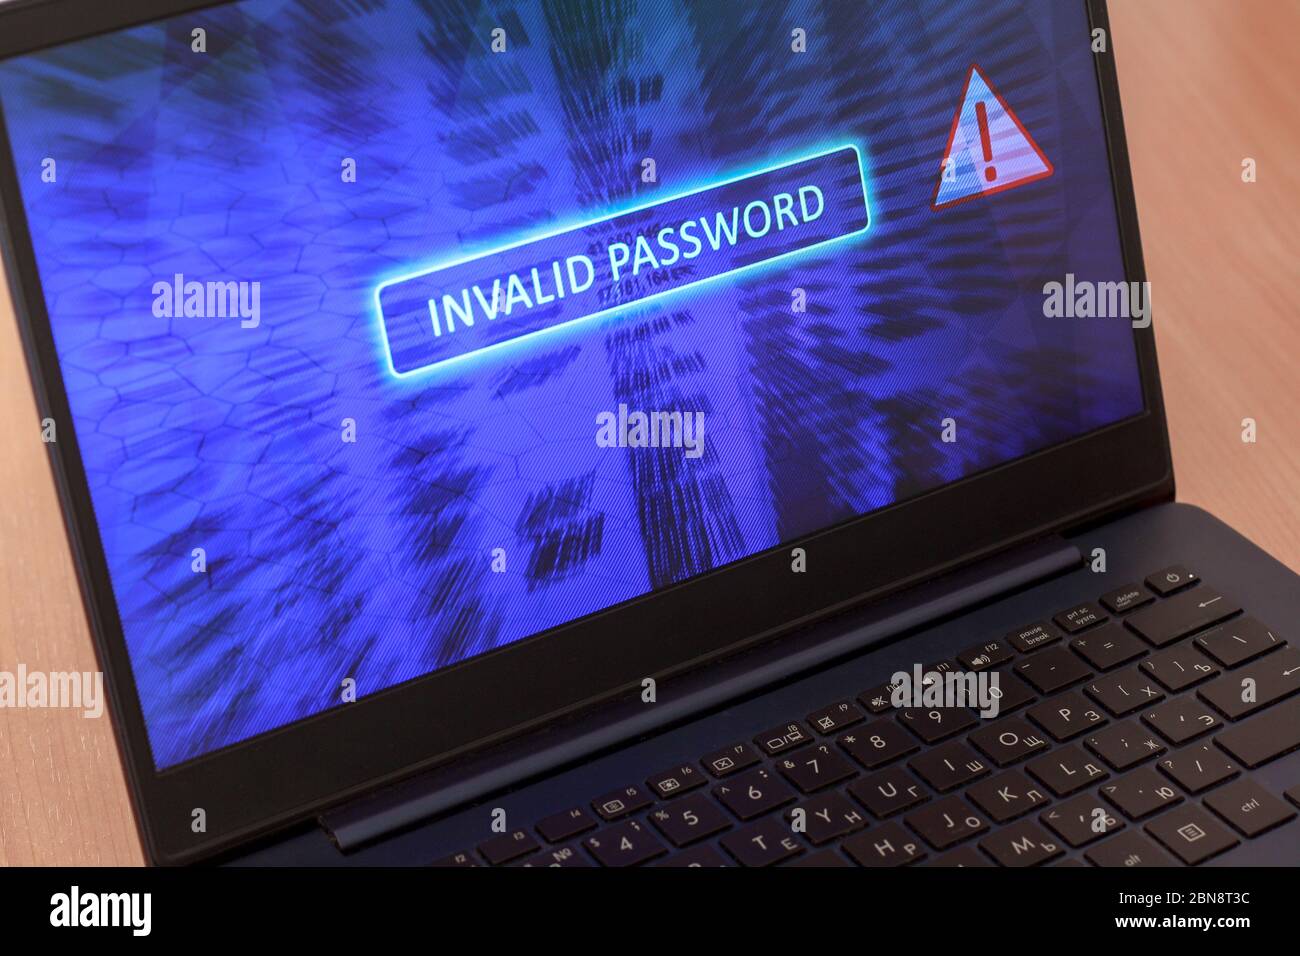 Informazioni sullo schermo del computer con errore di immissione della password. Password non valida su sfondo blu. Icona triangolare di avvertenza rossa. Orizzontale. Foto Stock